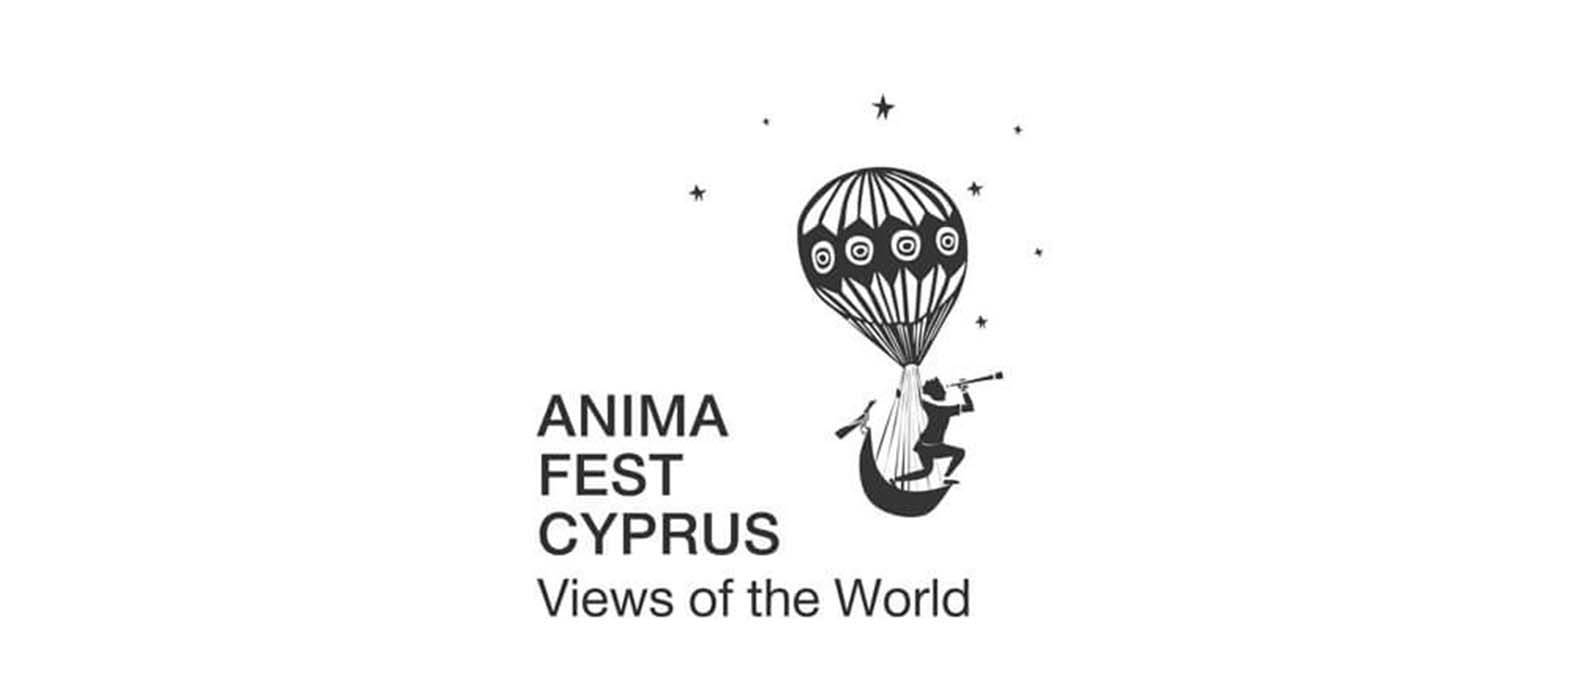 جشنواره بین المللی فیلم انیمیشن (قبرس)